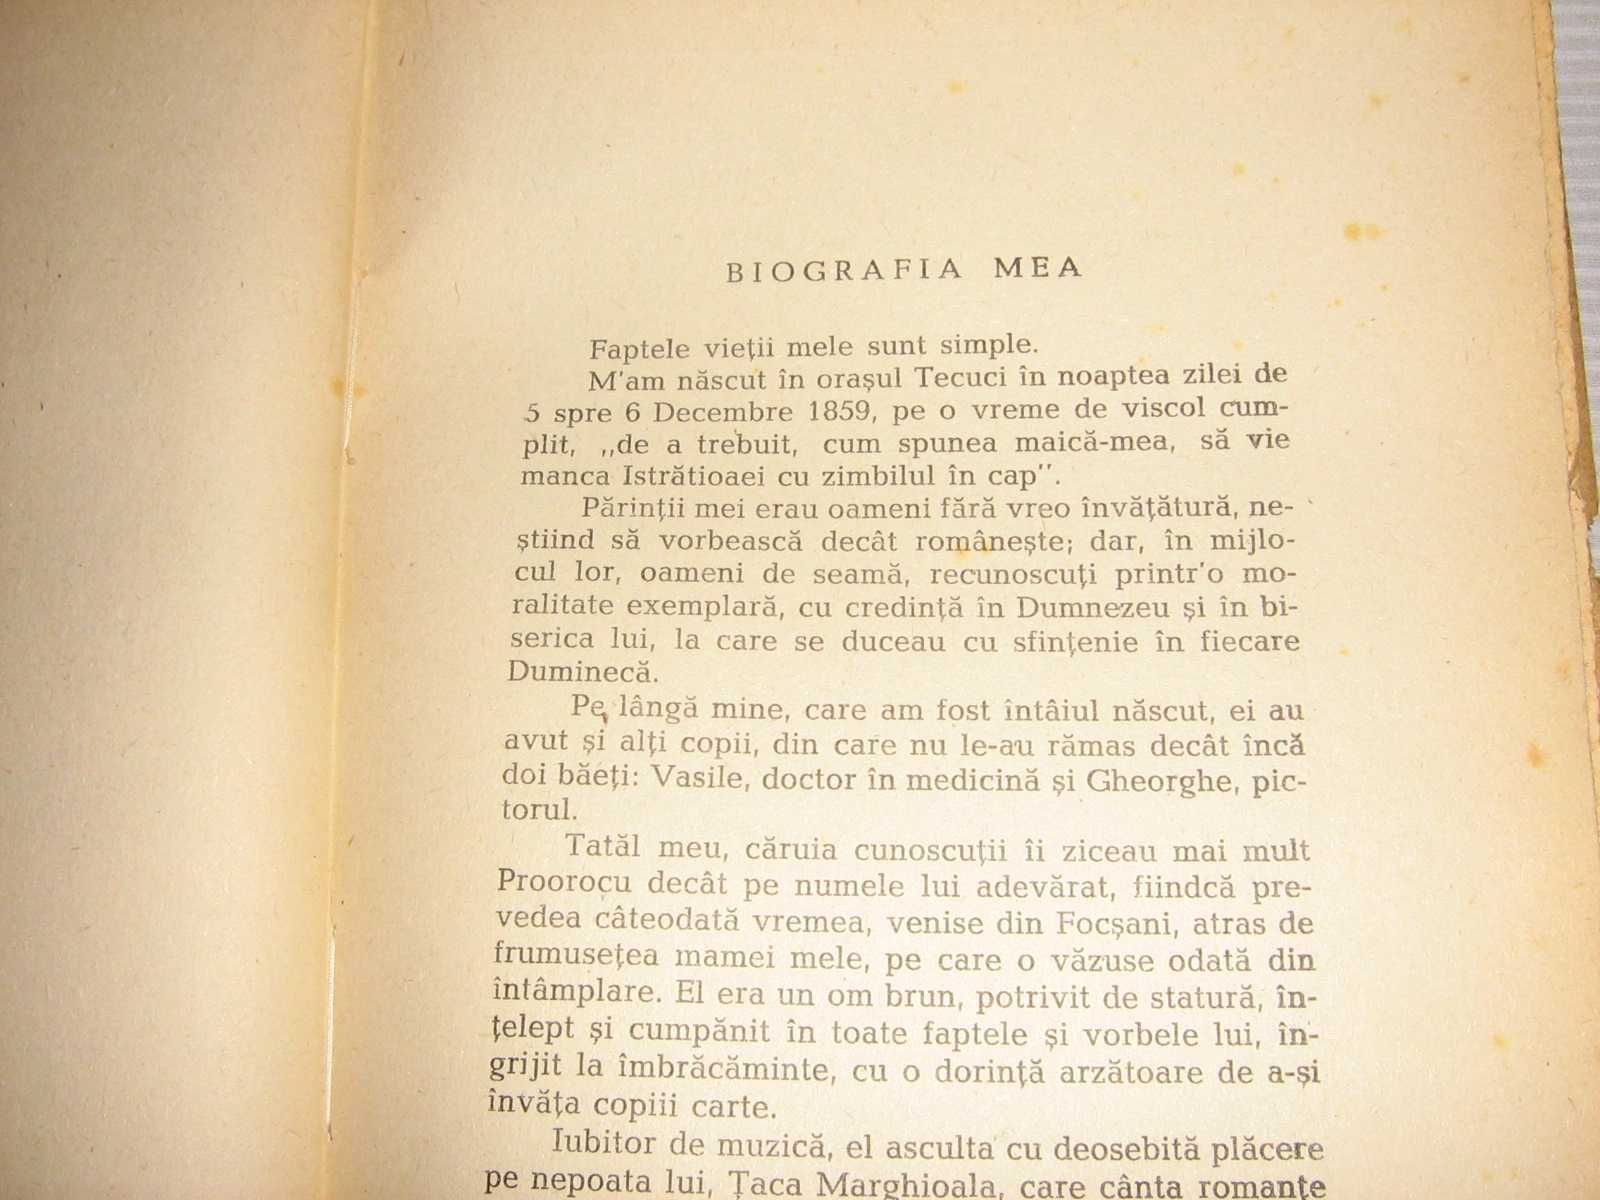 «Junimea», I. E. Torouţiu, Studii şi documente literare, vol.VI